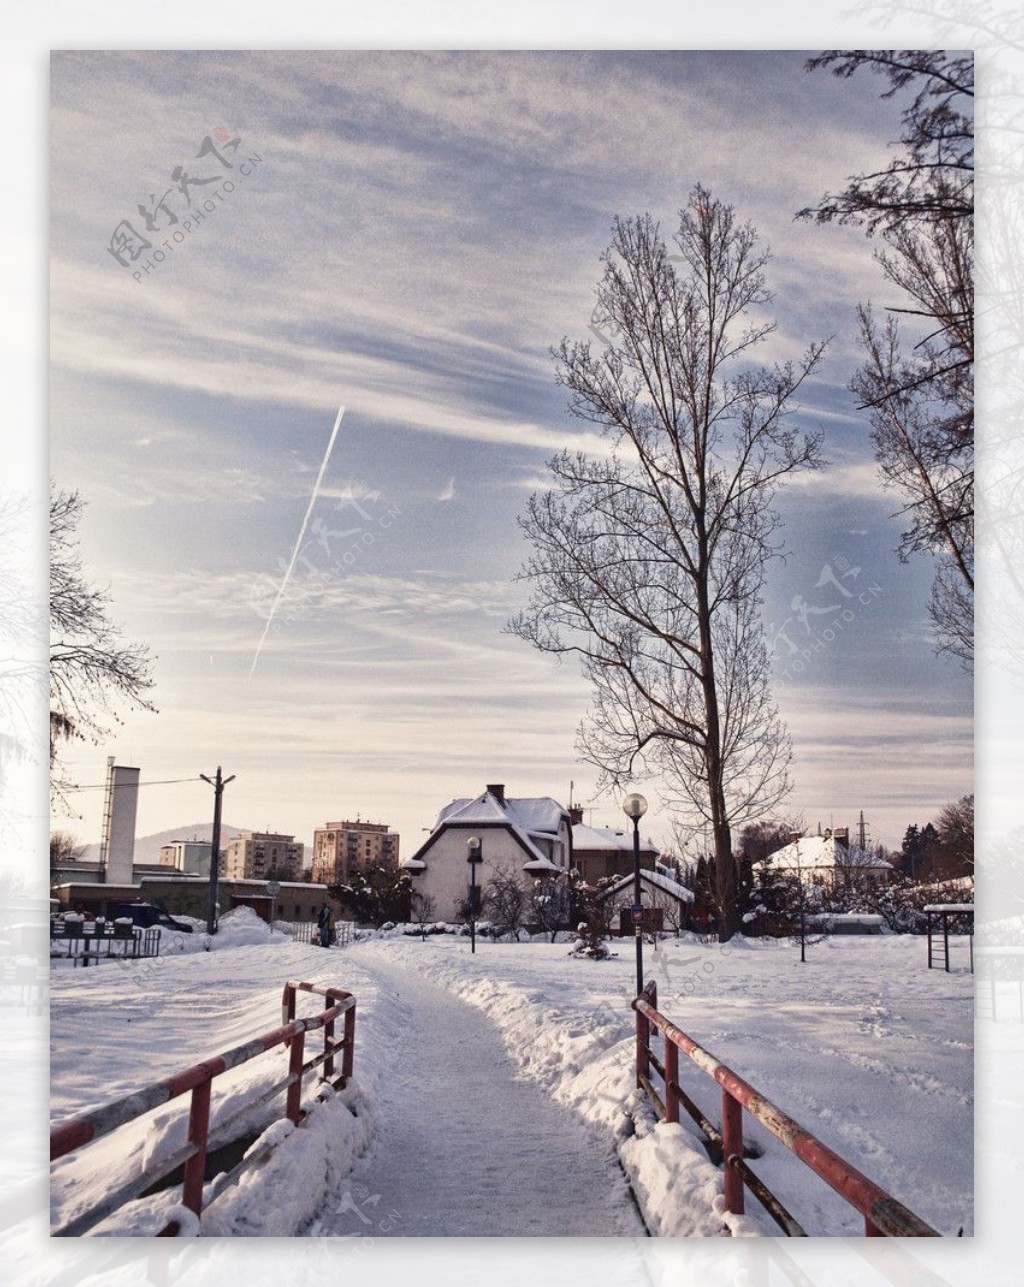 冬天美景图片